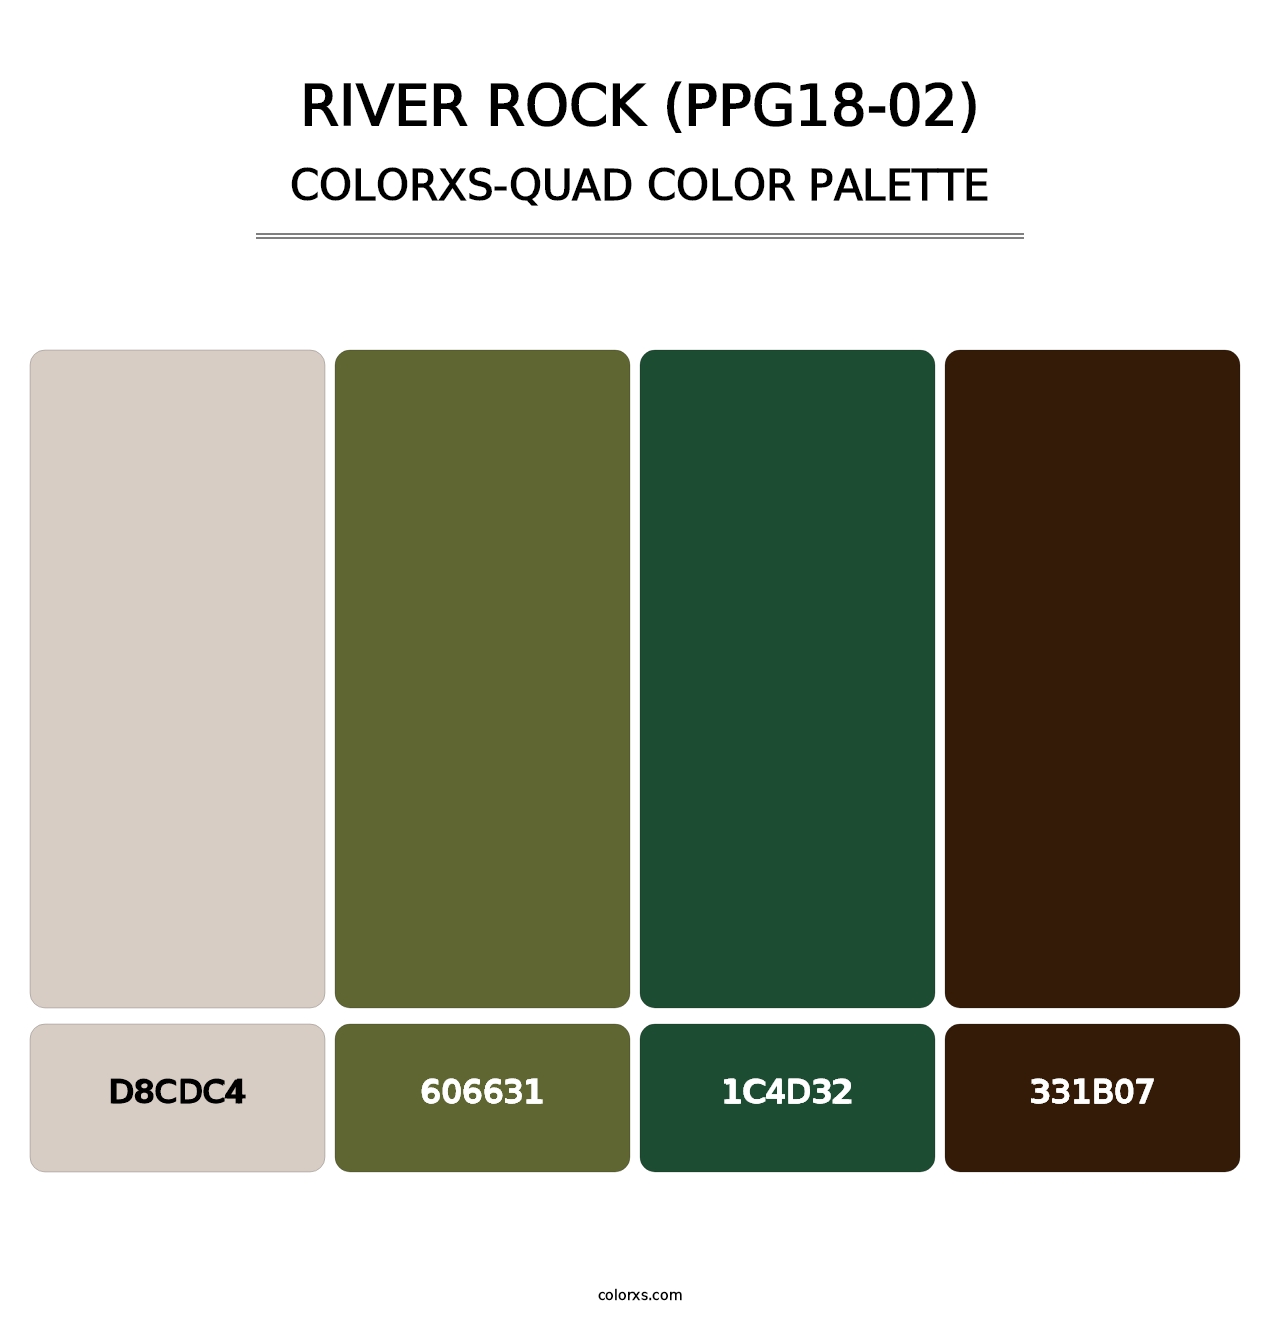 River Rock (PPG18-02) - Colorxs Quad Palette